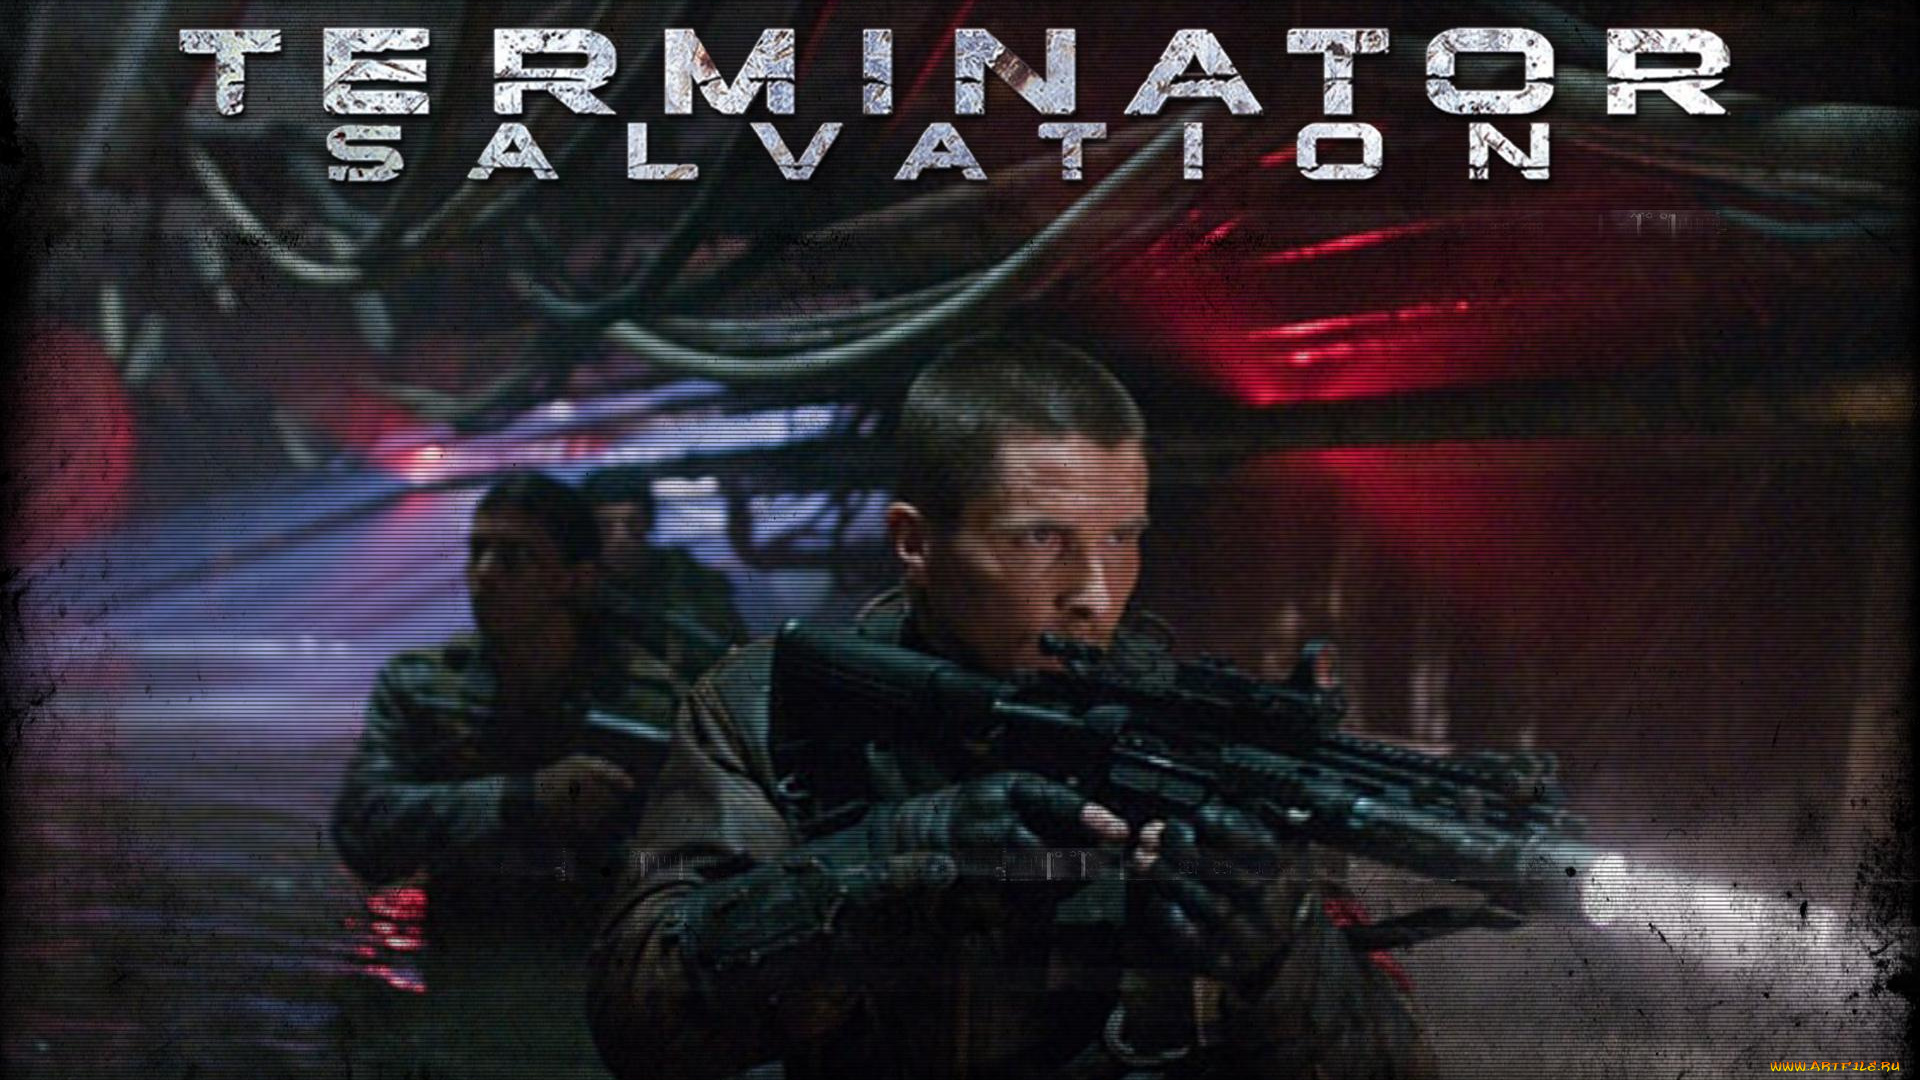 terminator, salvation, кино, фильмы